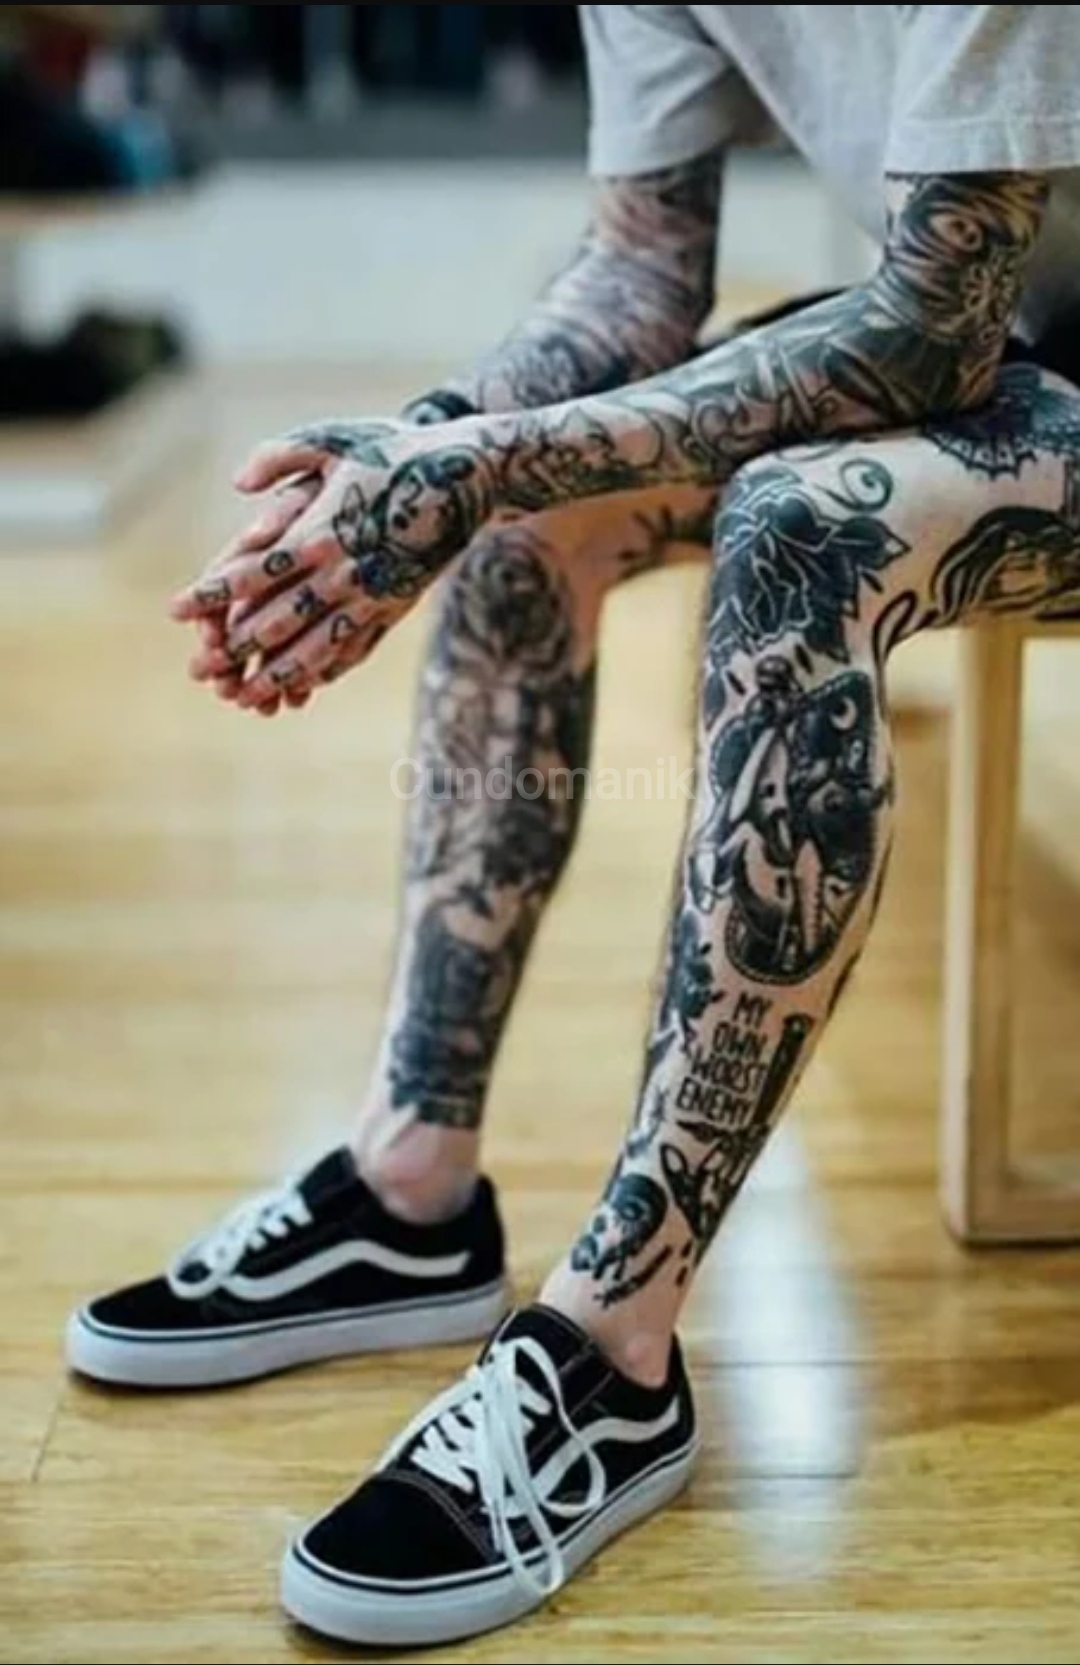 10 Epic Best Tattoos Design for Men & Women